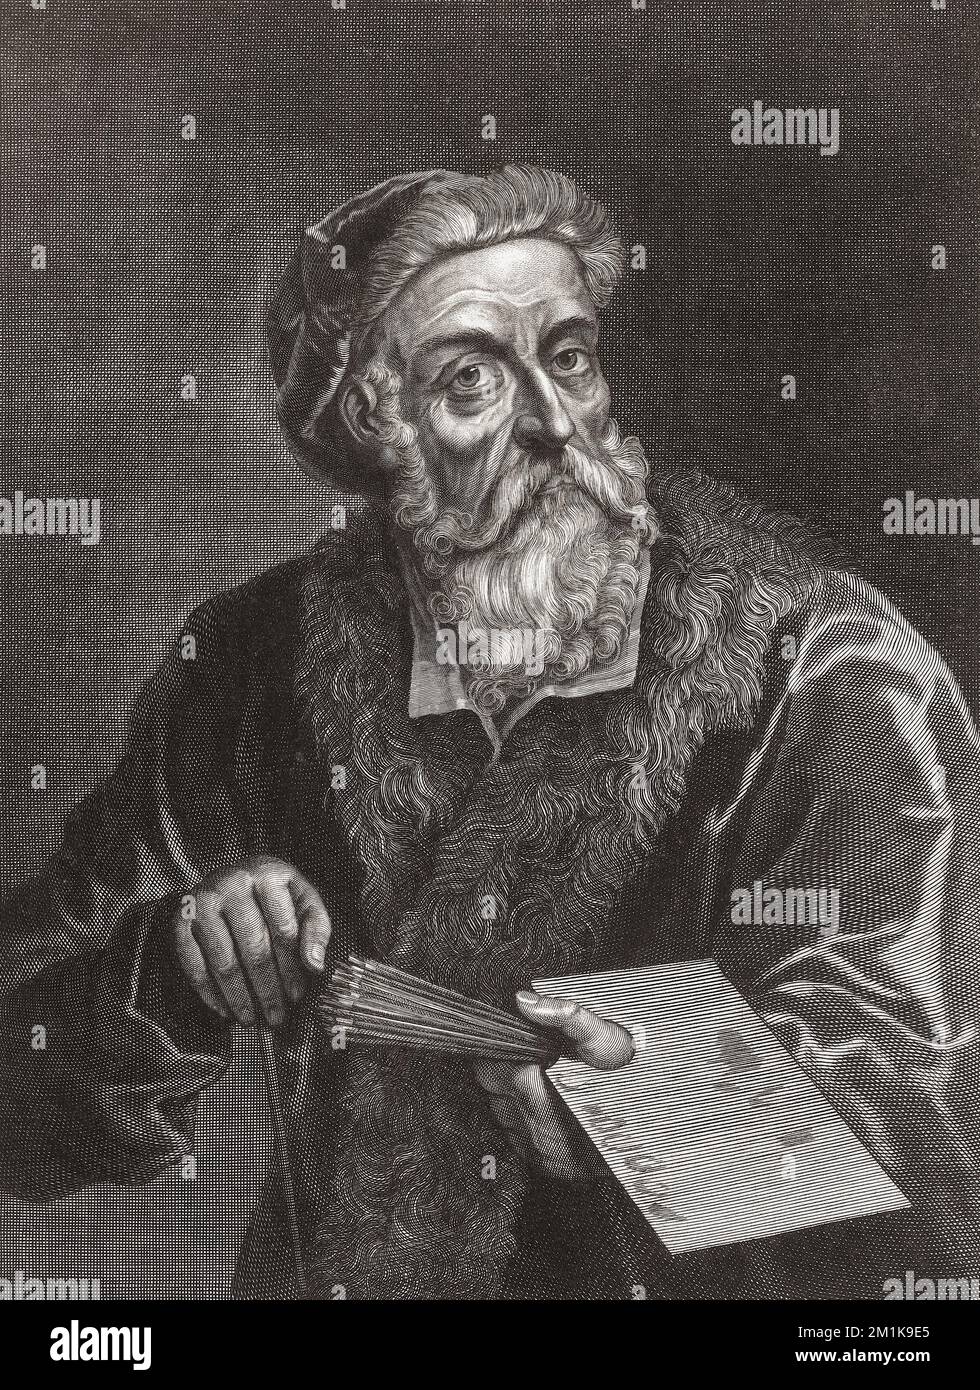 Tiziano Vecelli ou Tiziano Vecellio, 1488/1490 - 1576, communément appelé Titien. Peintre italien. Banque D'Images